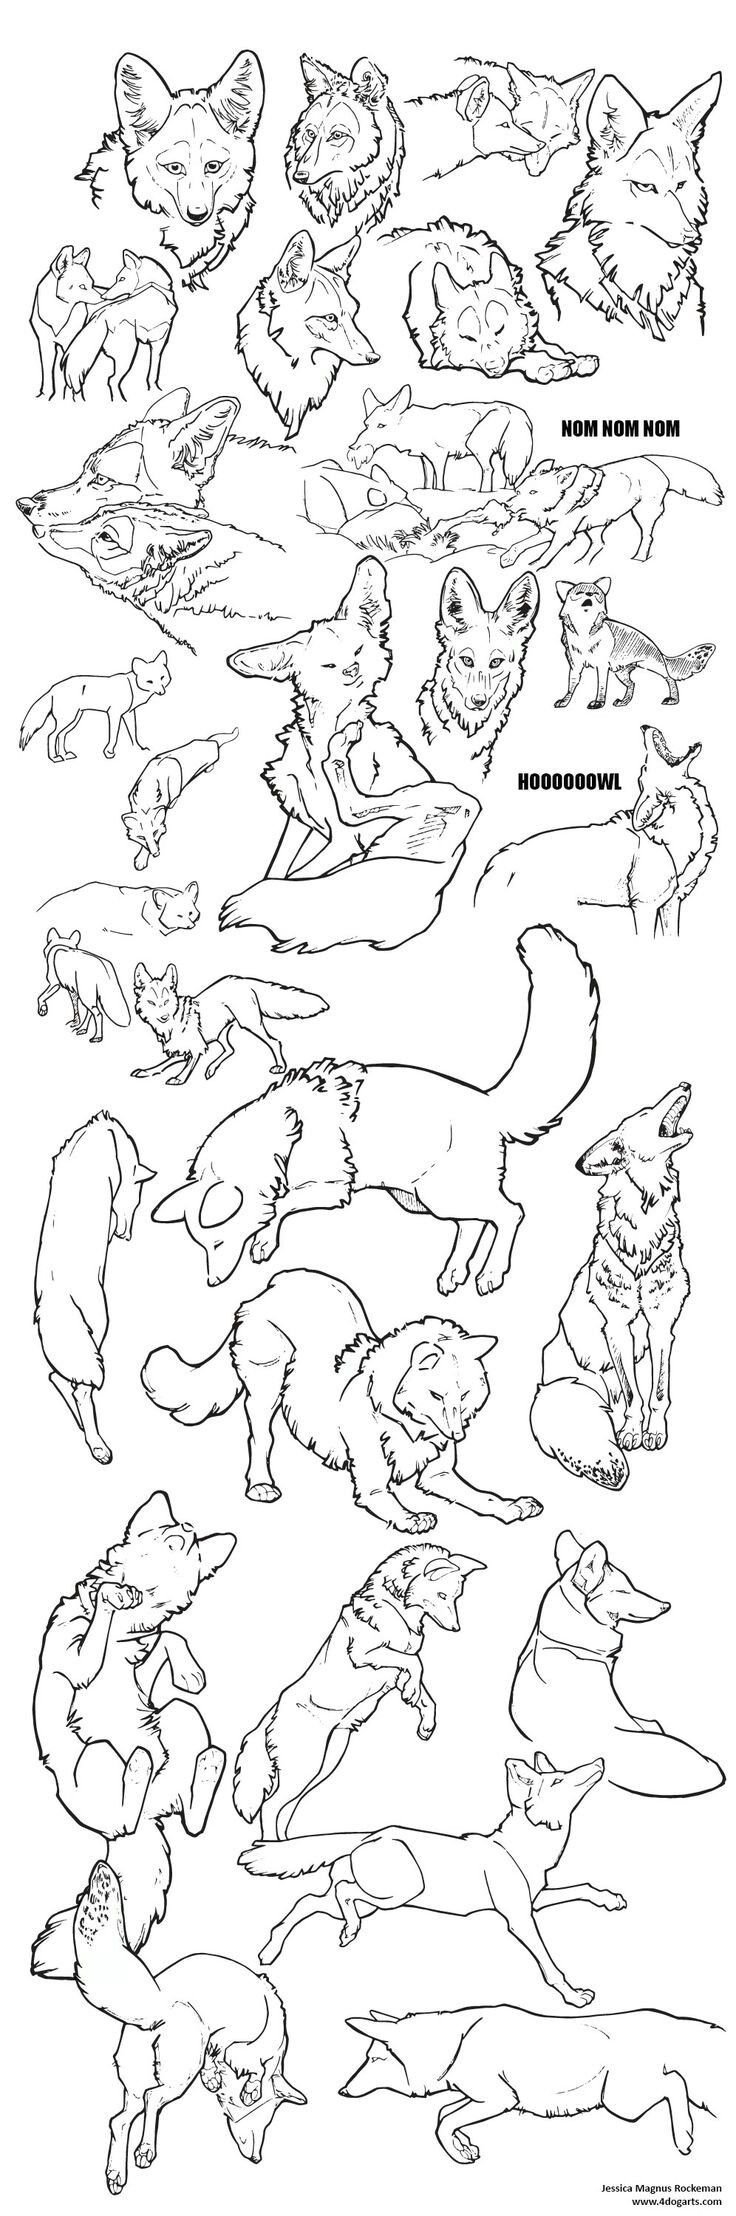 Анатомия койота для рисования